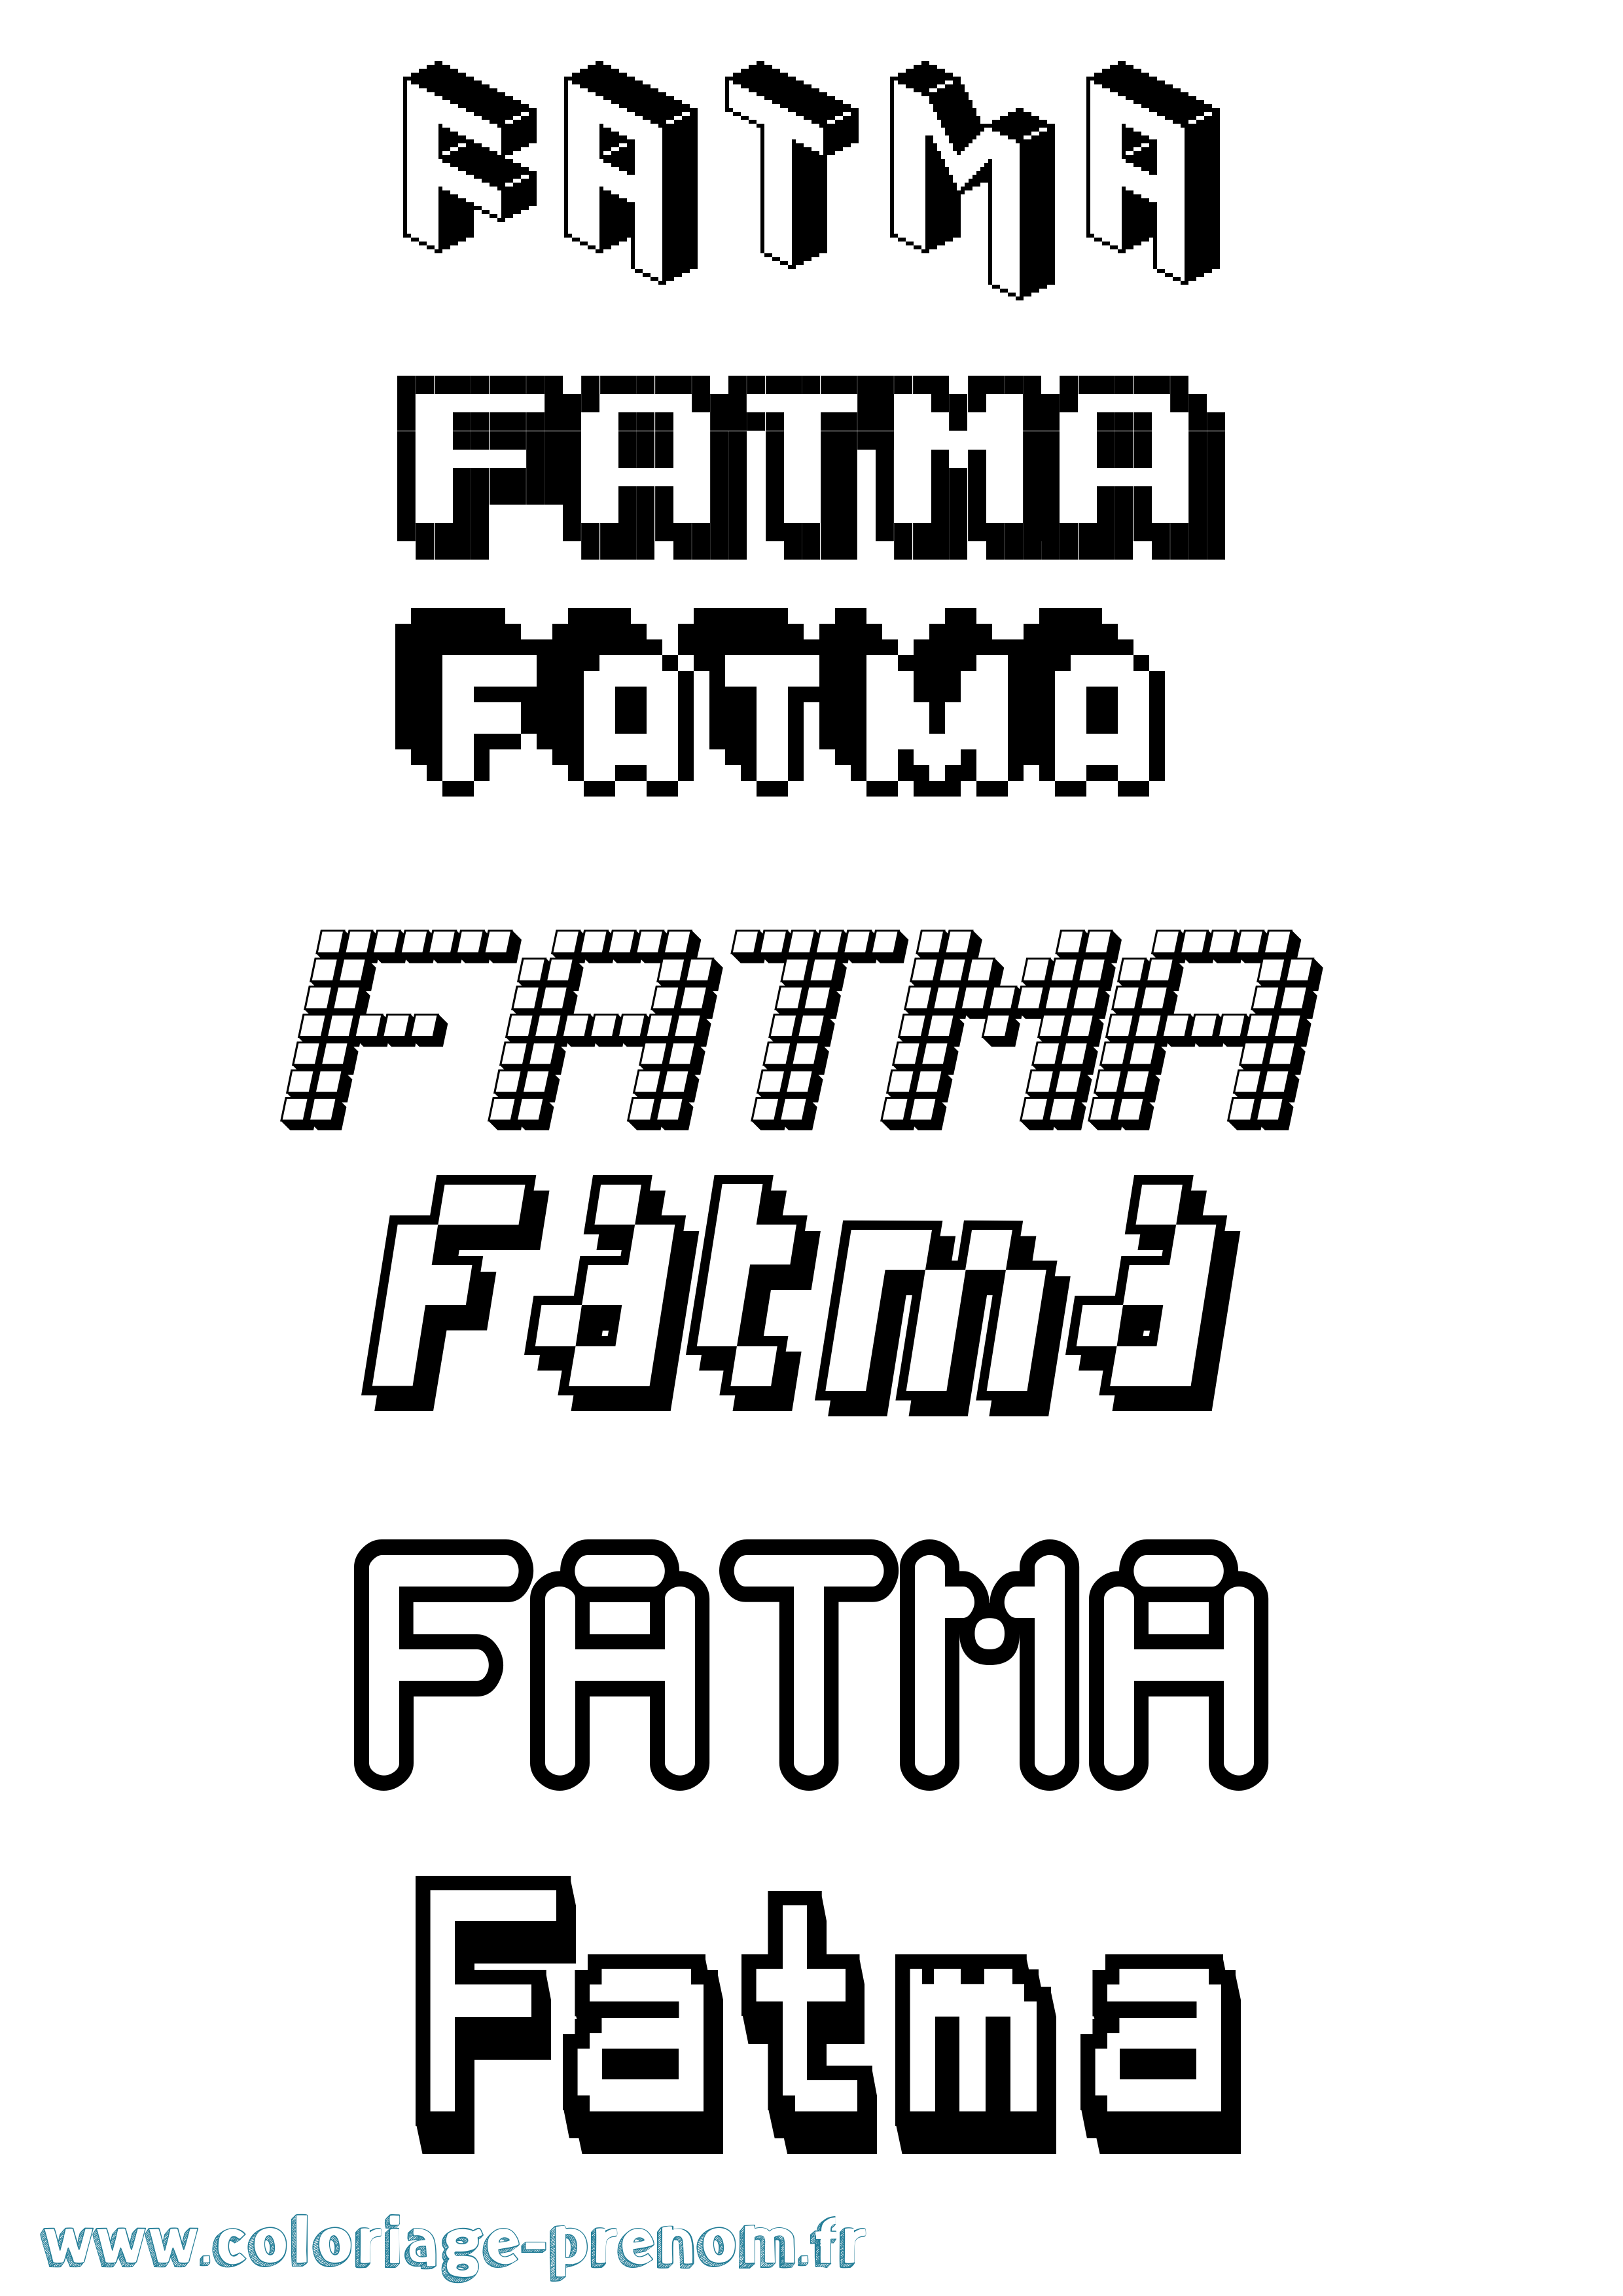 Coloriage prénom Fatma Pixel